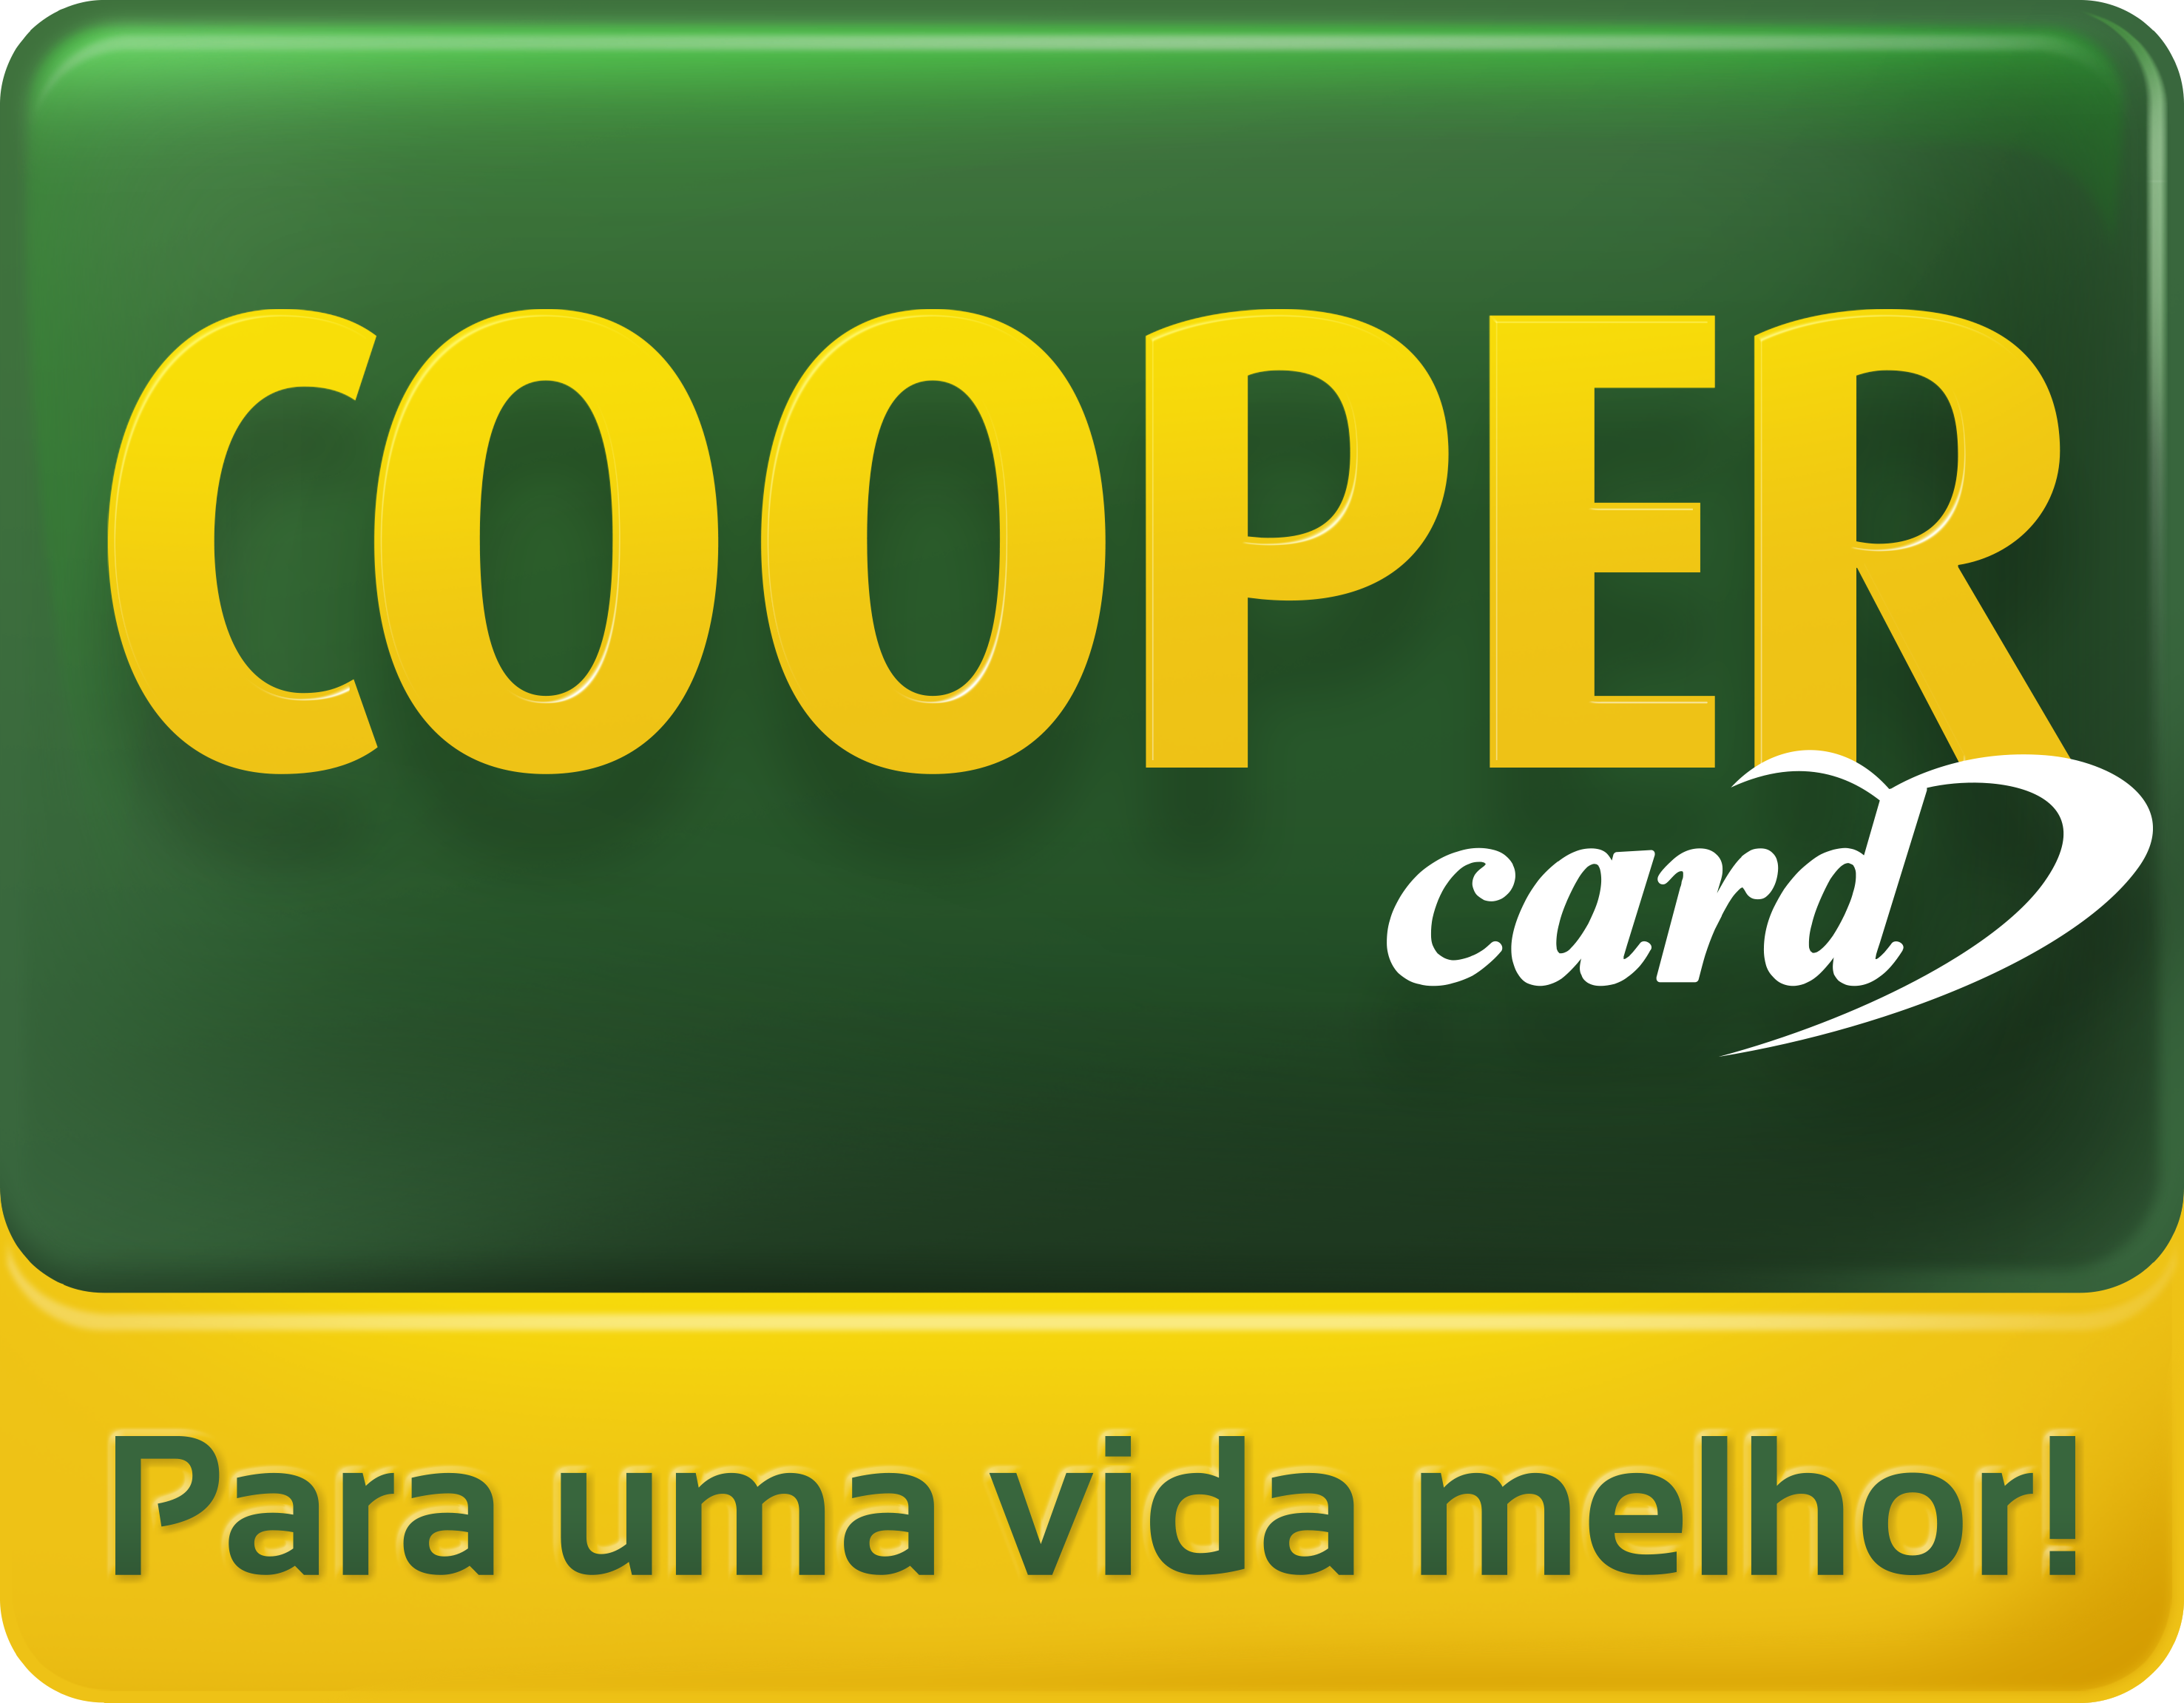 COOPER CARD